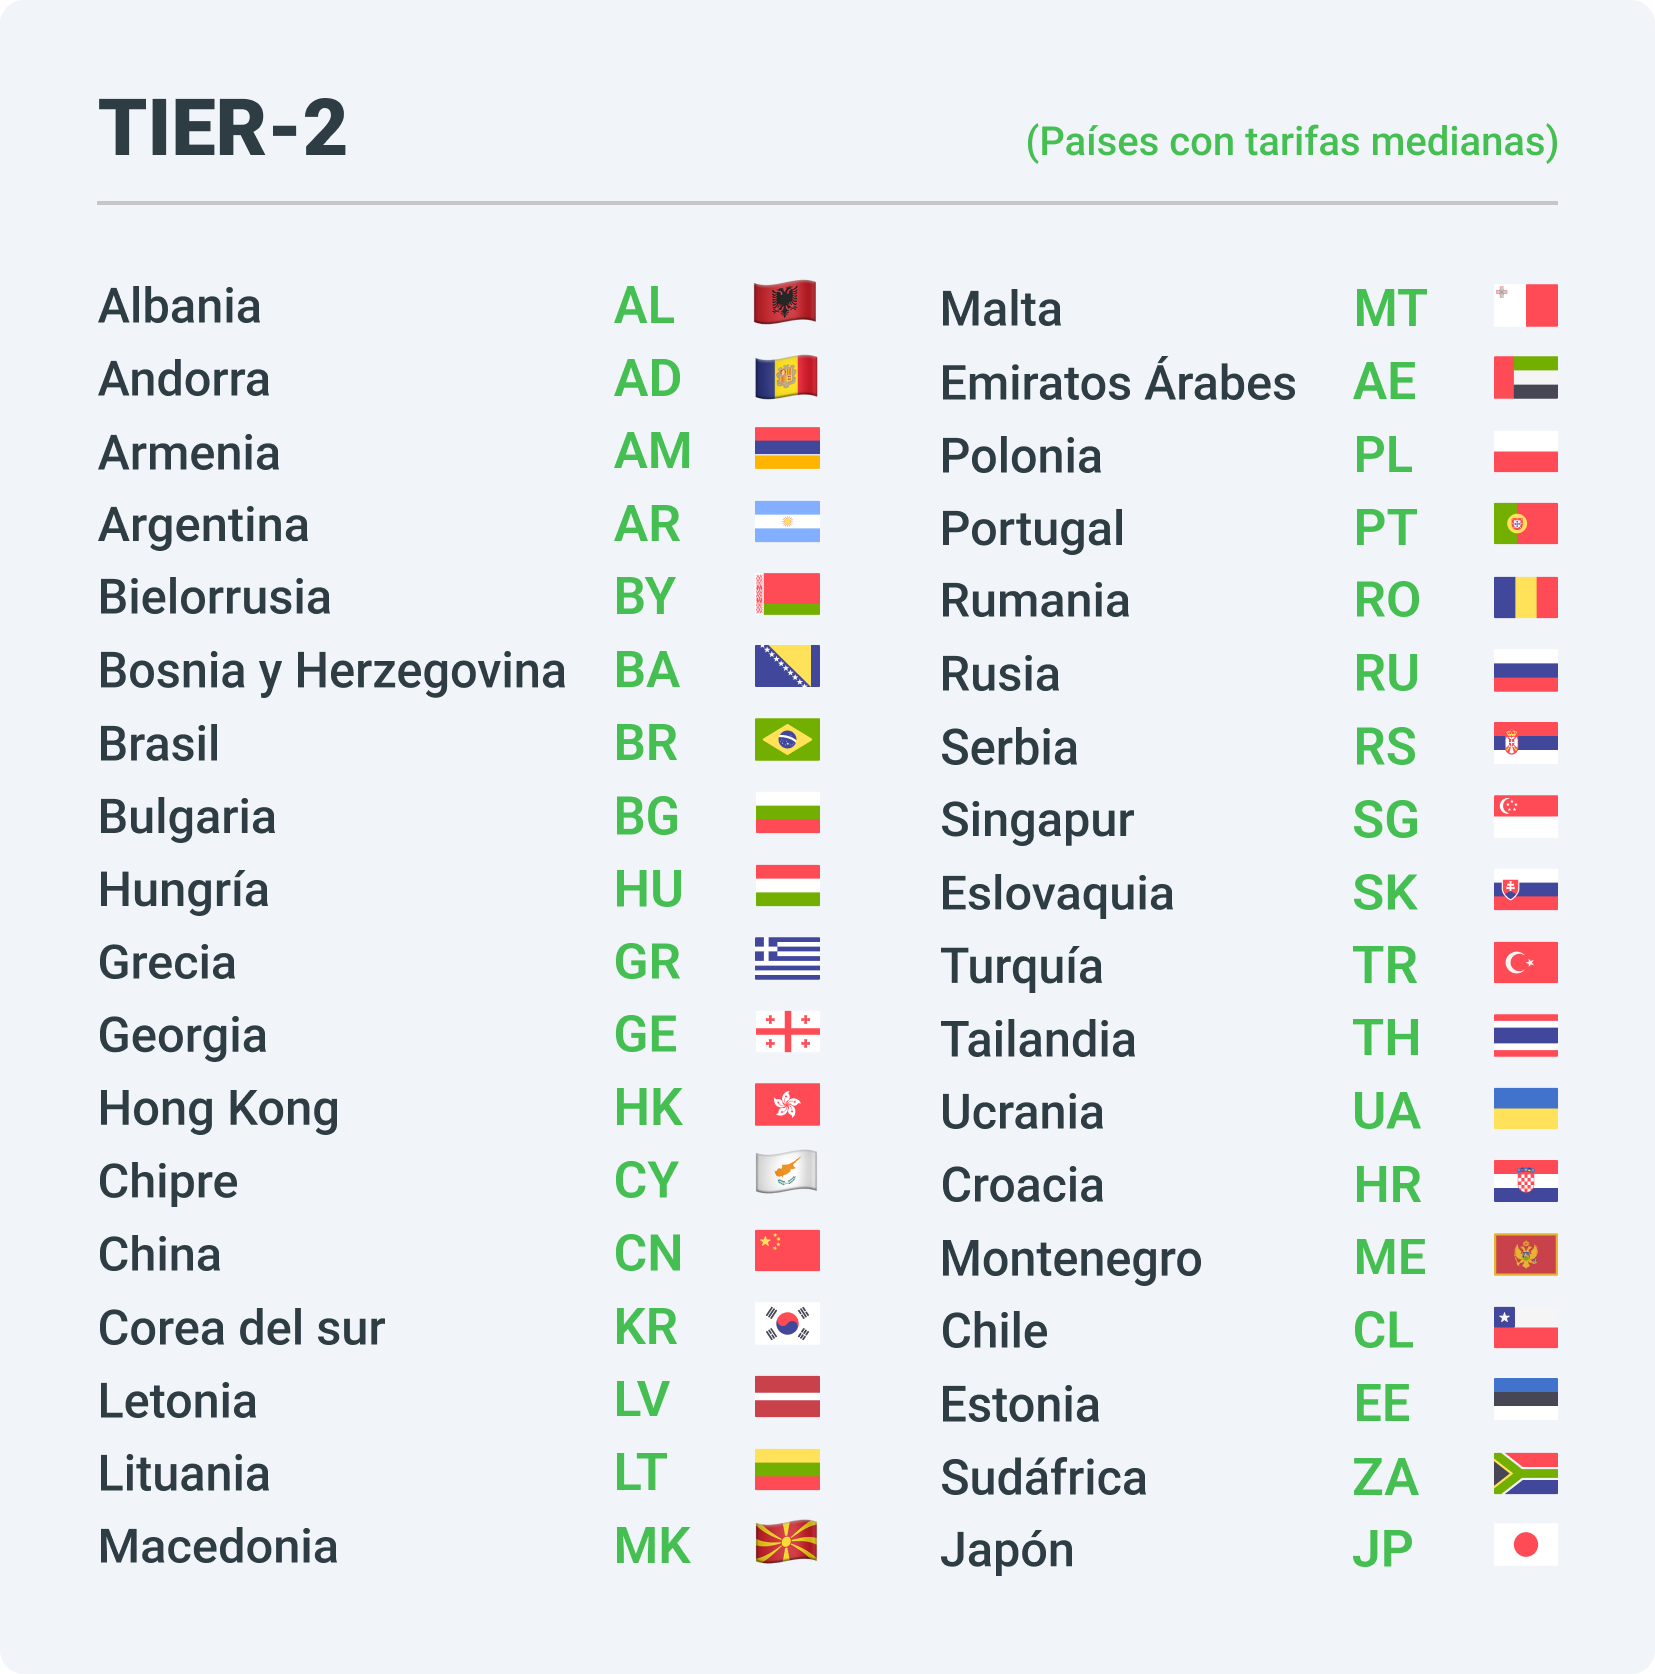 Países del grupo Tier-2